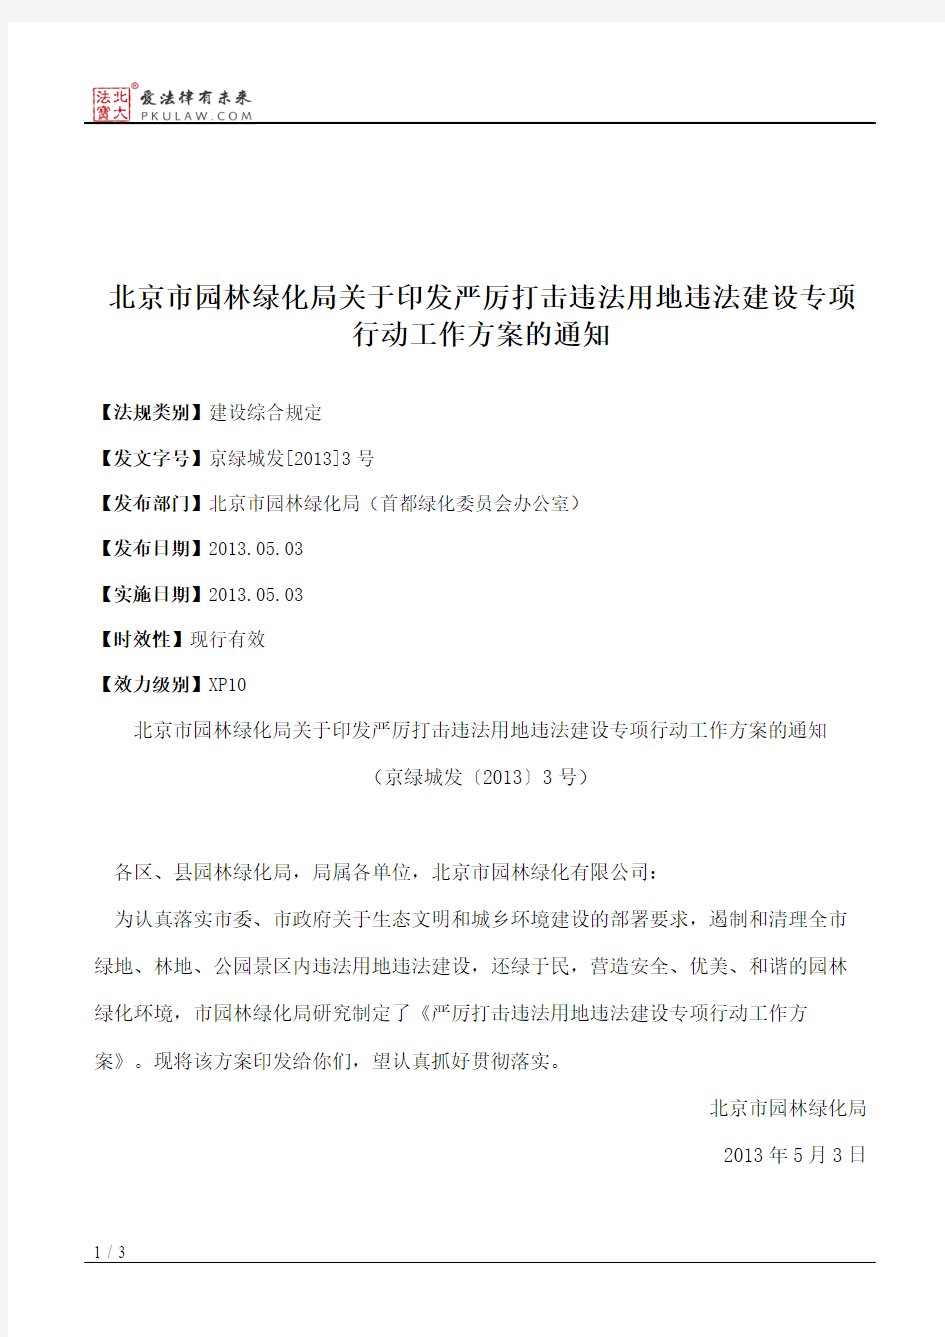 北京市园林绿化局关于印发严厉打击违法用地违法建设专项行动工作